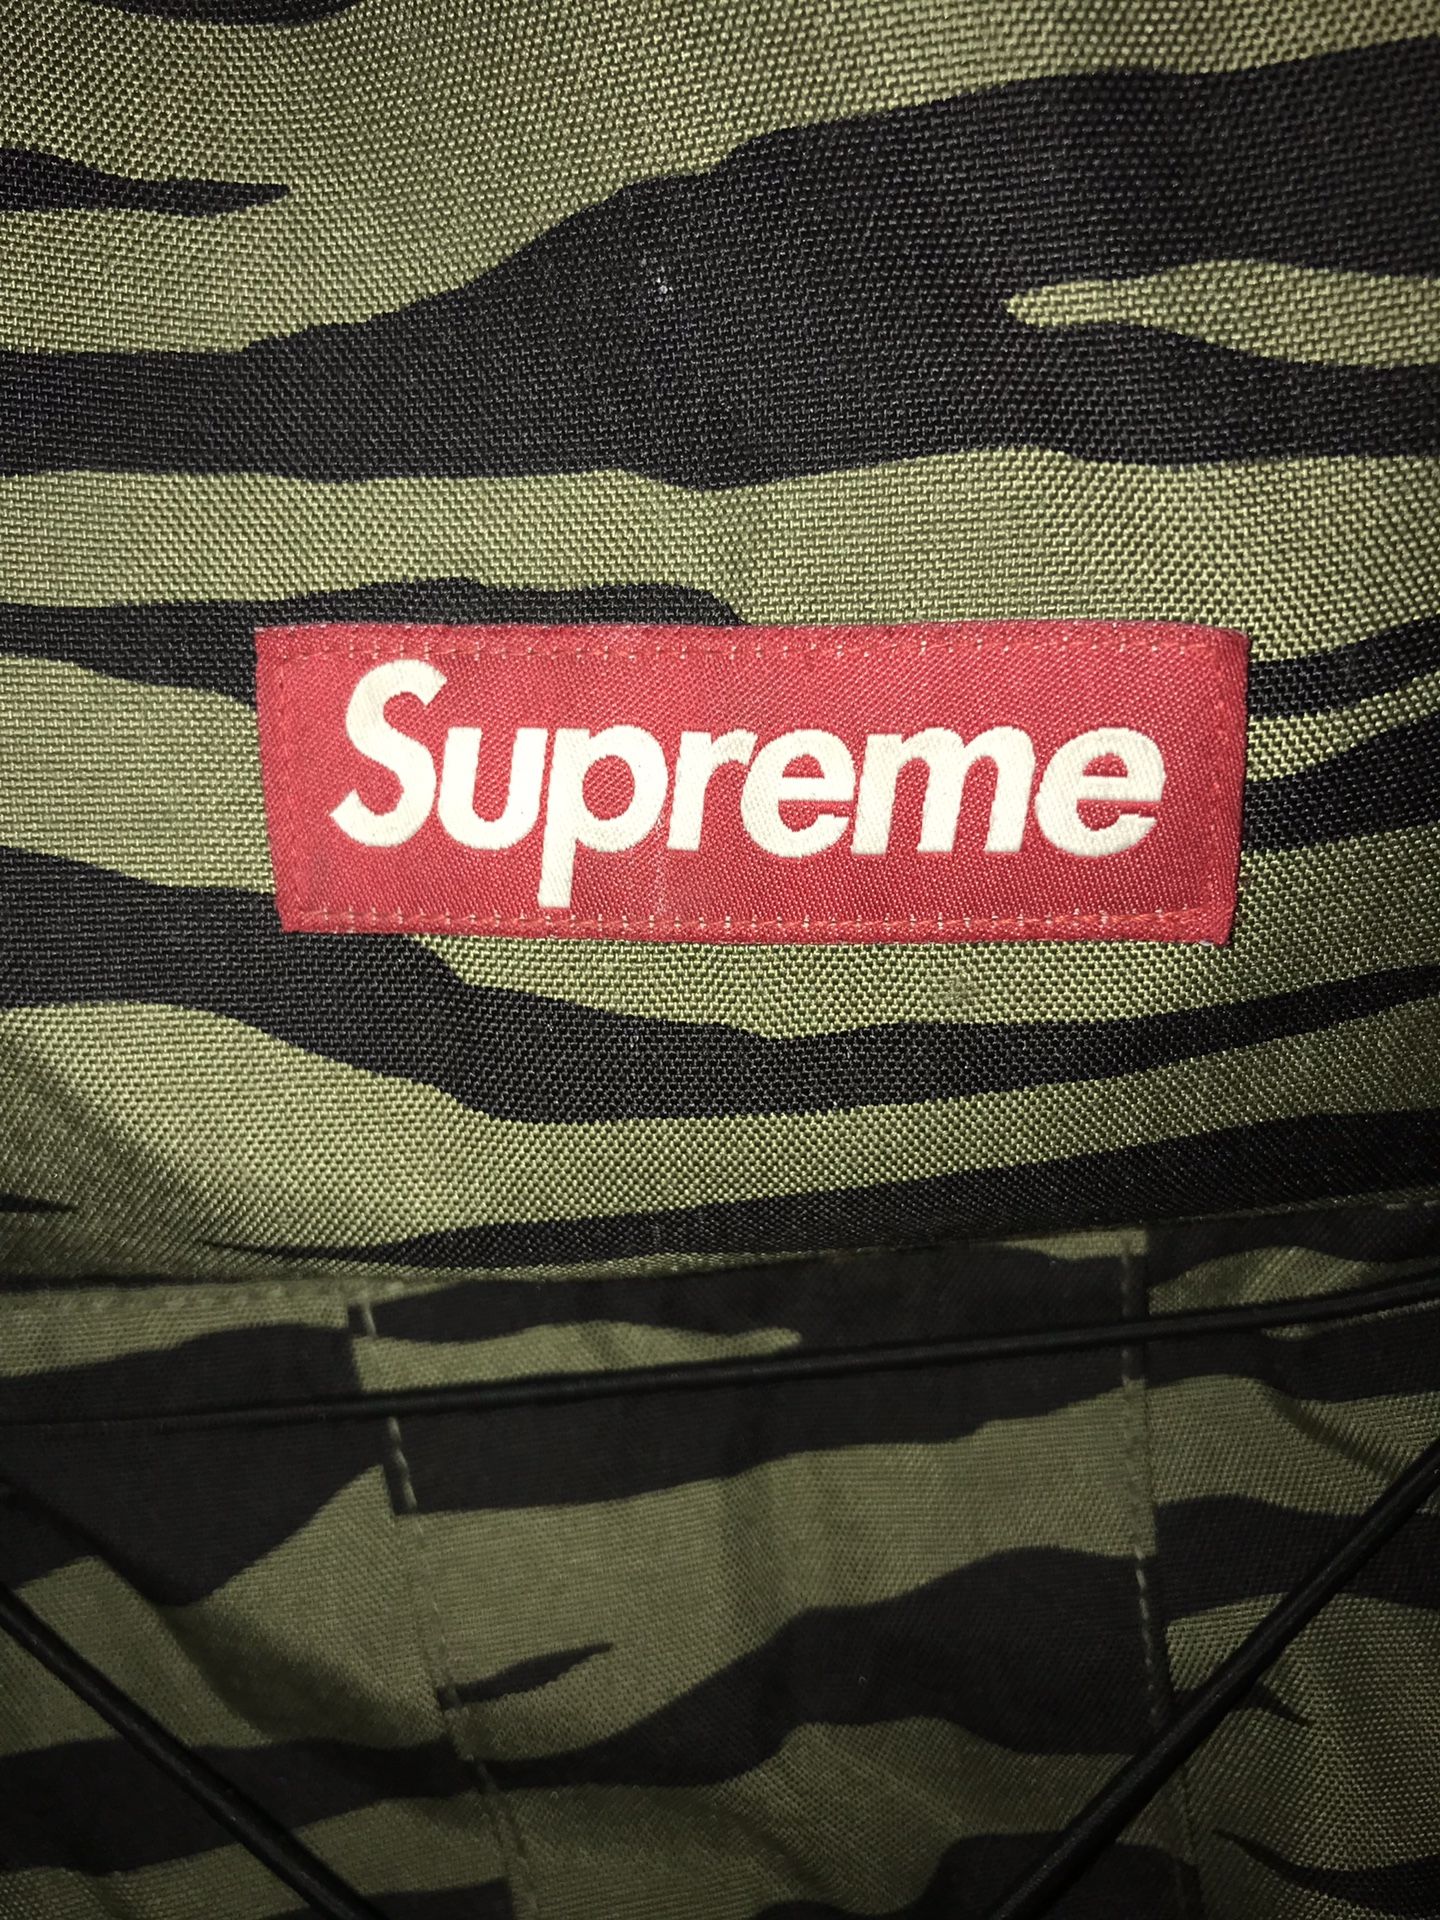 Supreme Cross 30 XXX Olive Zebra backpack box logo hoodie hat shirt